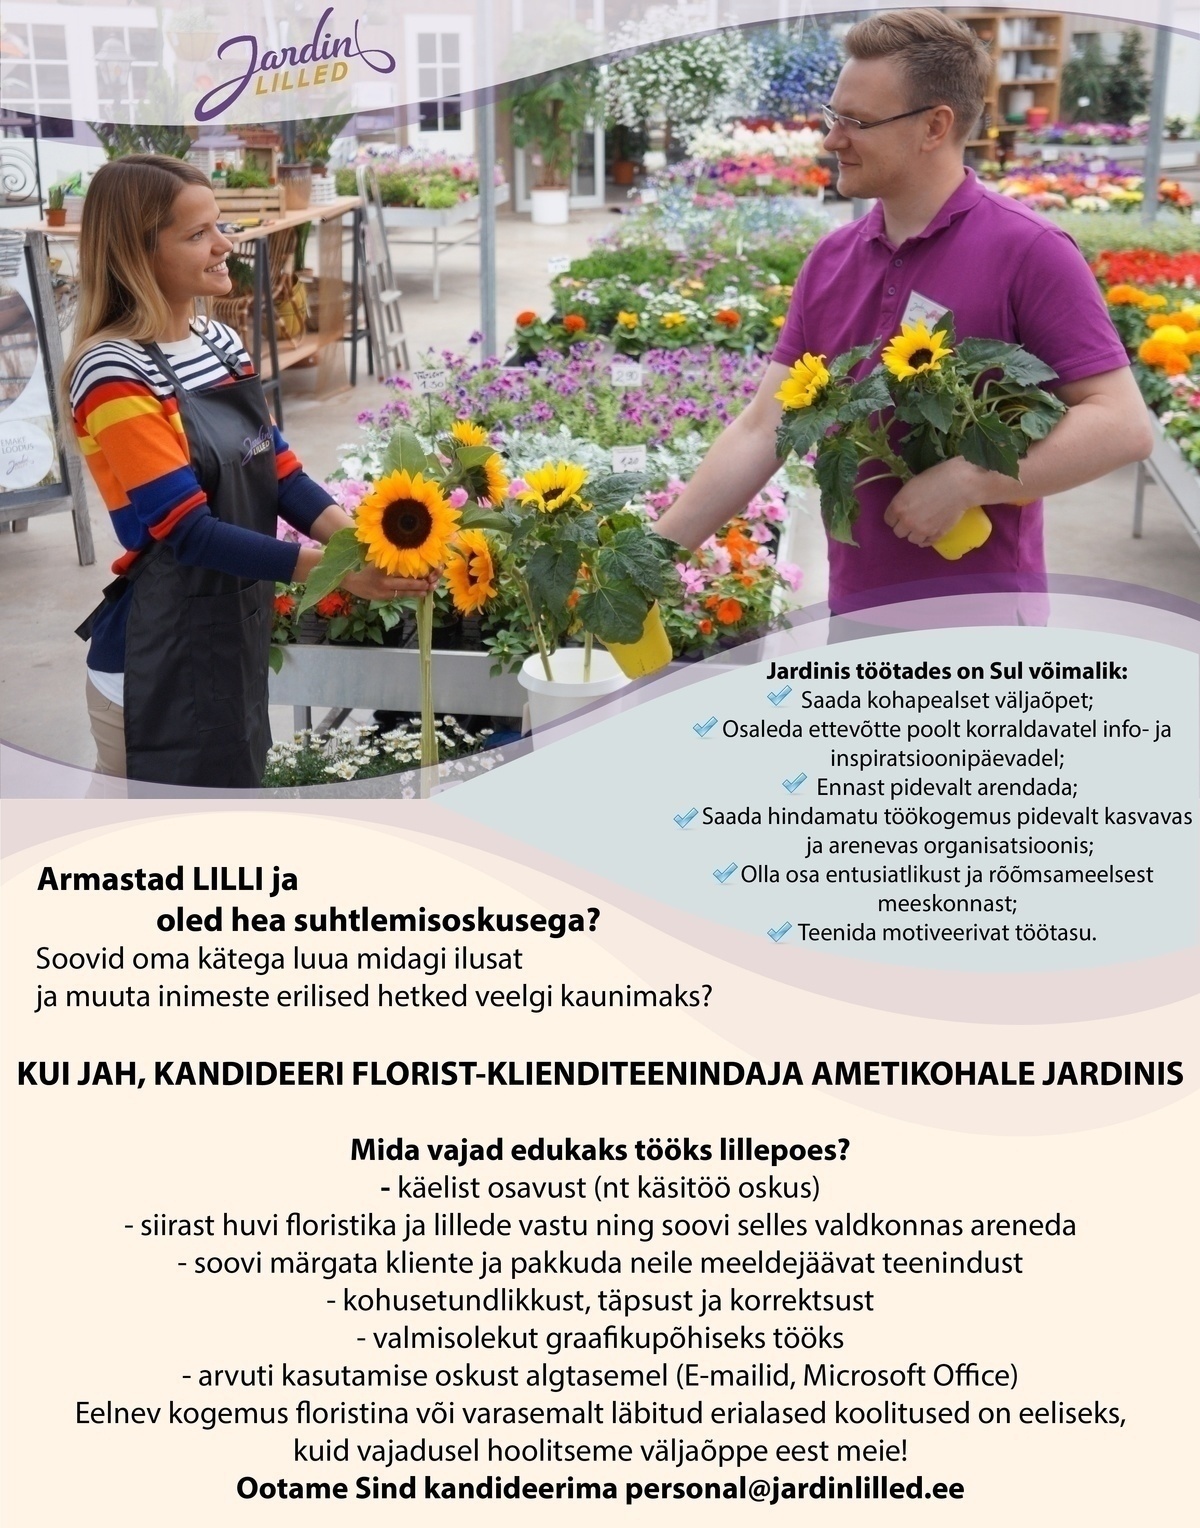 Jardin OÜ Florist-klienditeenindaja (Arsenal)